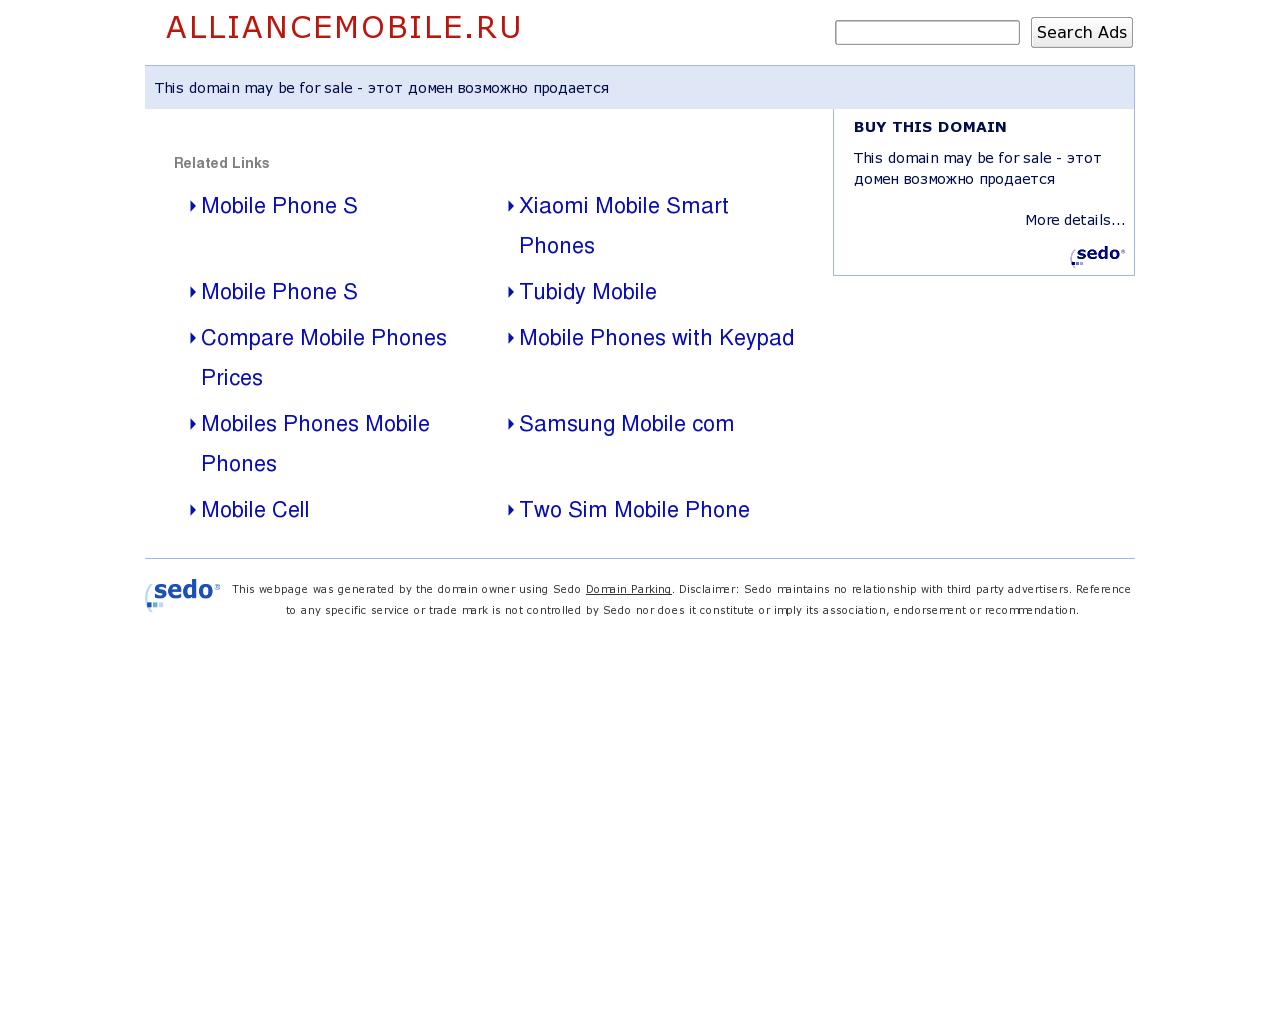 Изображение сайта alliancemobile.ru в разрешении 1280x1024